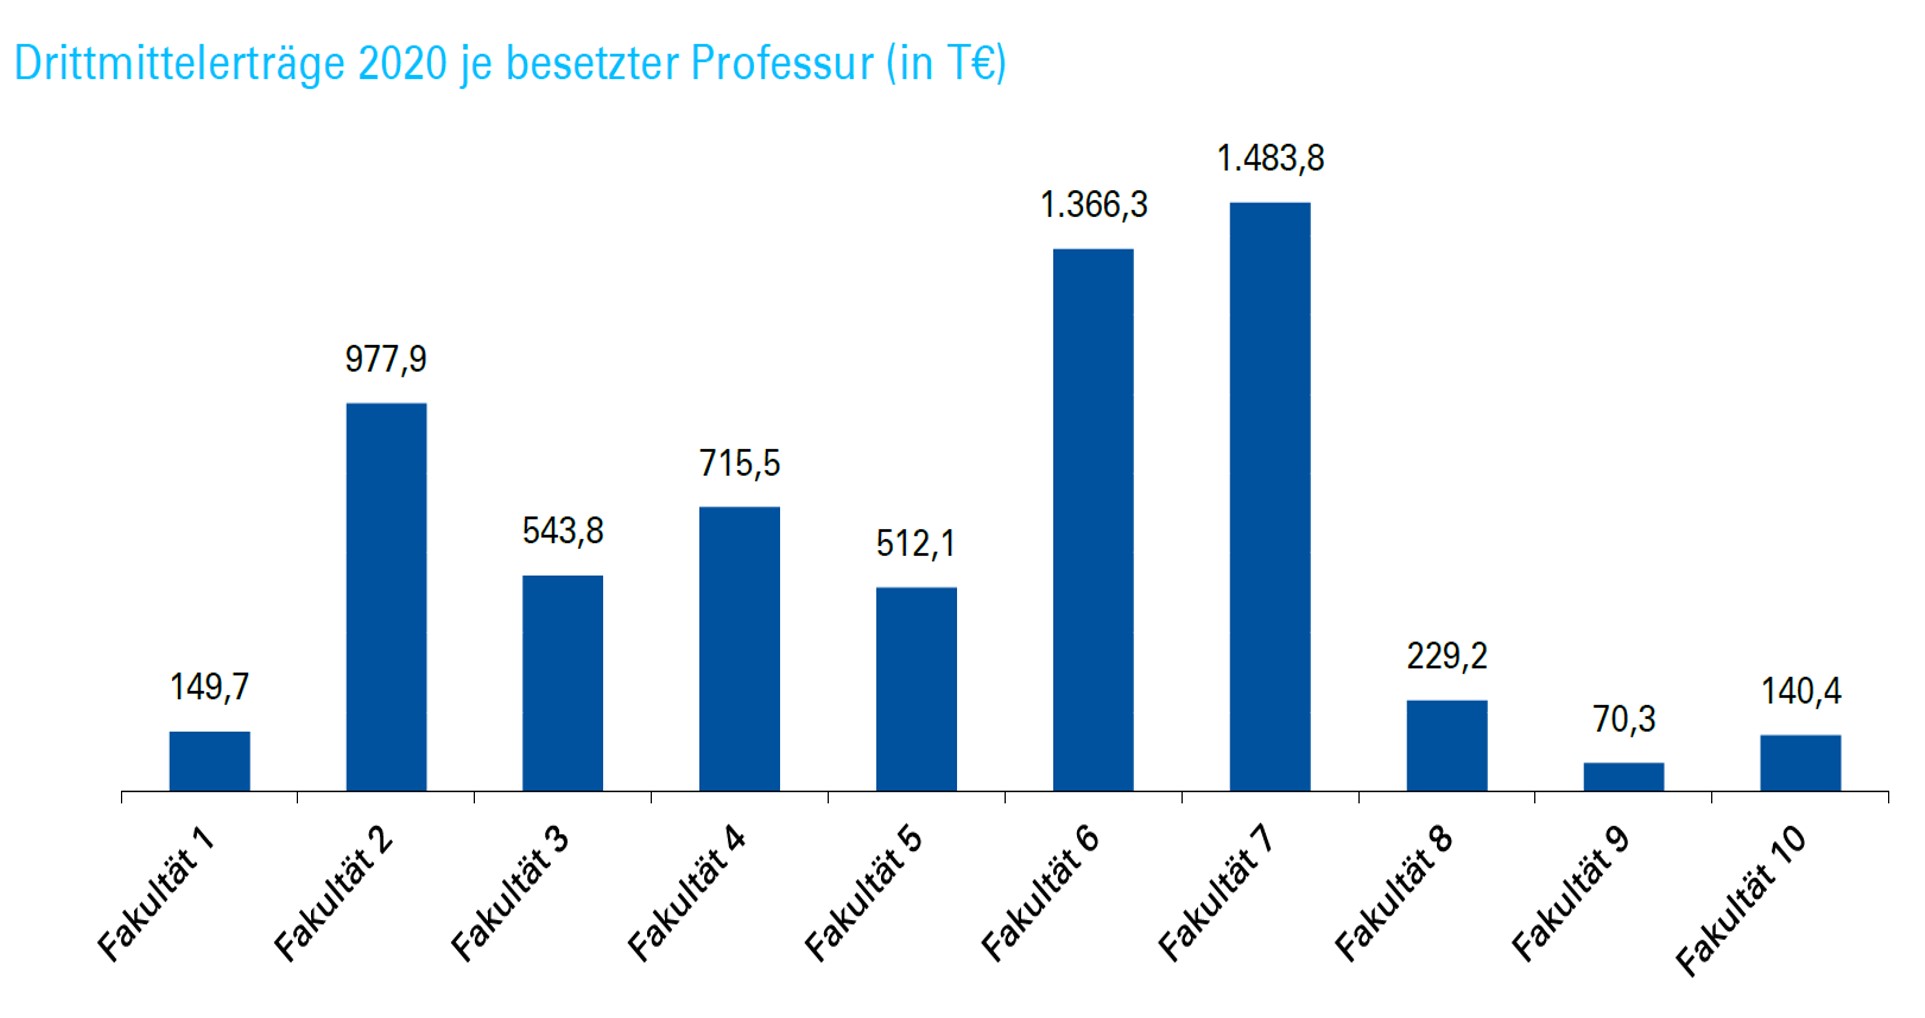 Schaubild 2020 an der Uni Stuttgart eingeworbene Drittmittel je besetzer Professur nach Fakultäten, von Fakultät 1 bis 10, in Tausend Euros:, 150; 978; 544; 715; 512; 1,366; 1,784; 229; 70; 140